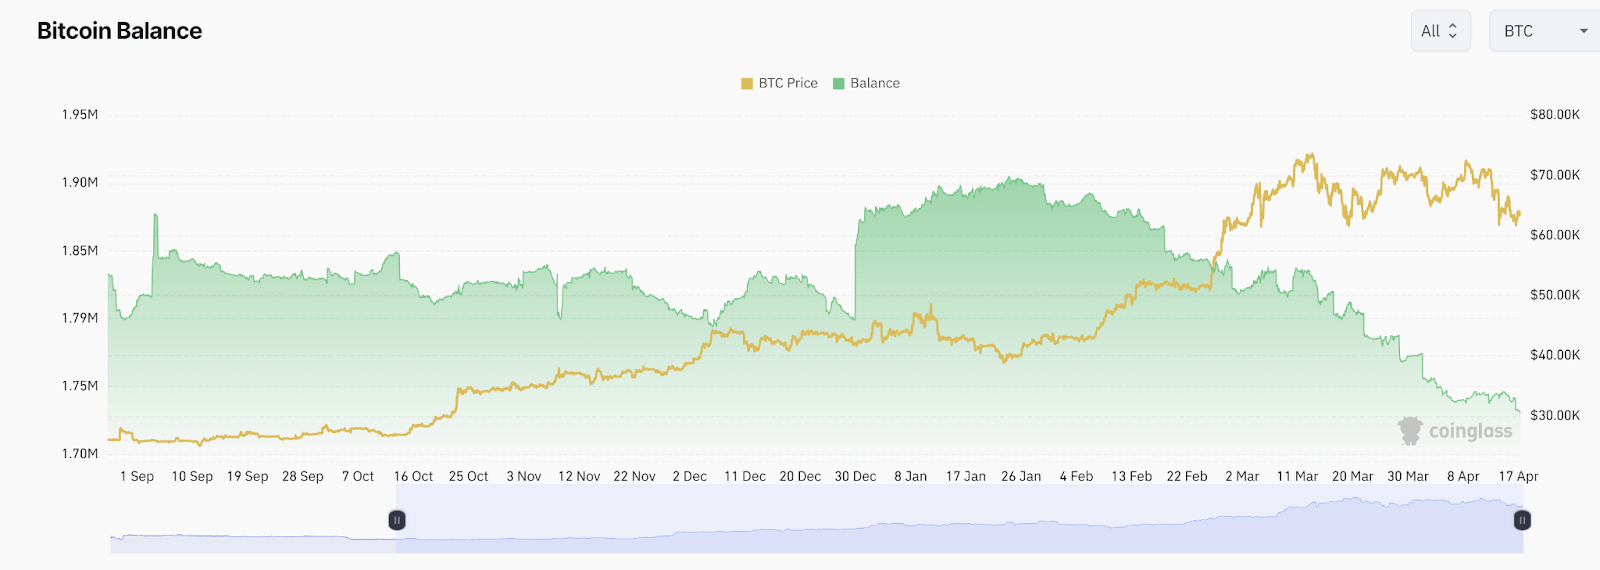 Precio de bitcoin vs saldo de bitcoin en los intercambios a través de Coinglass